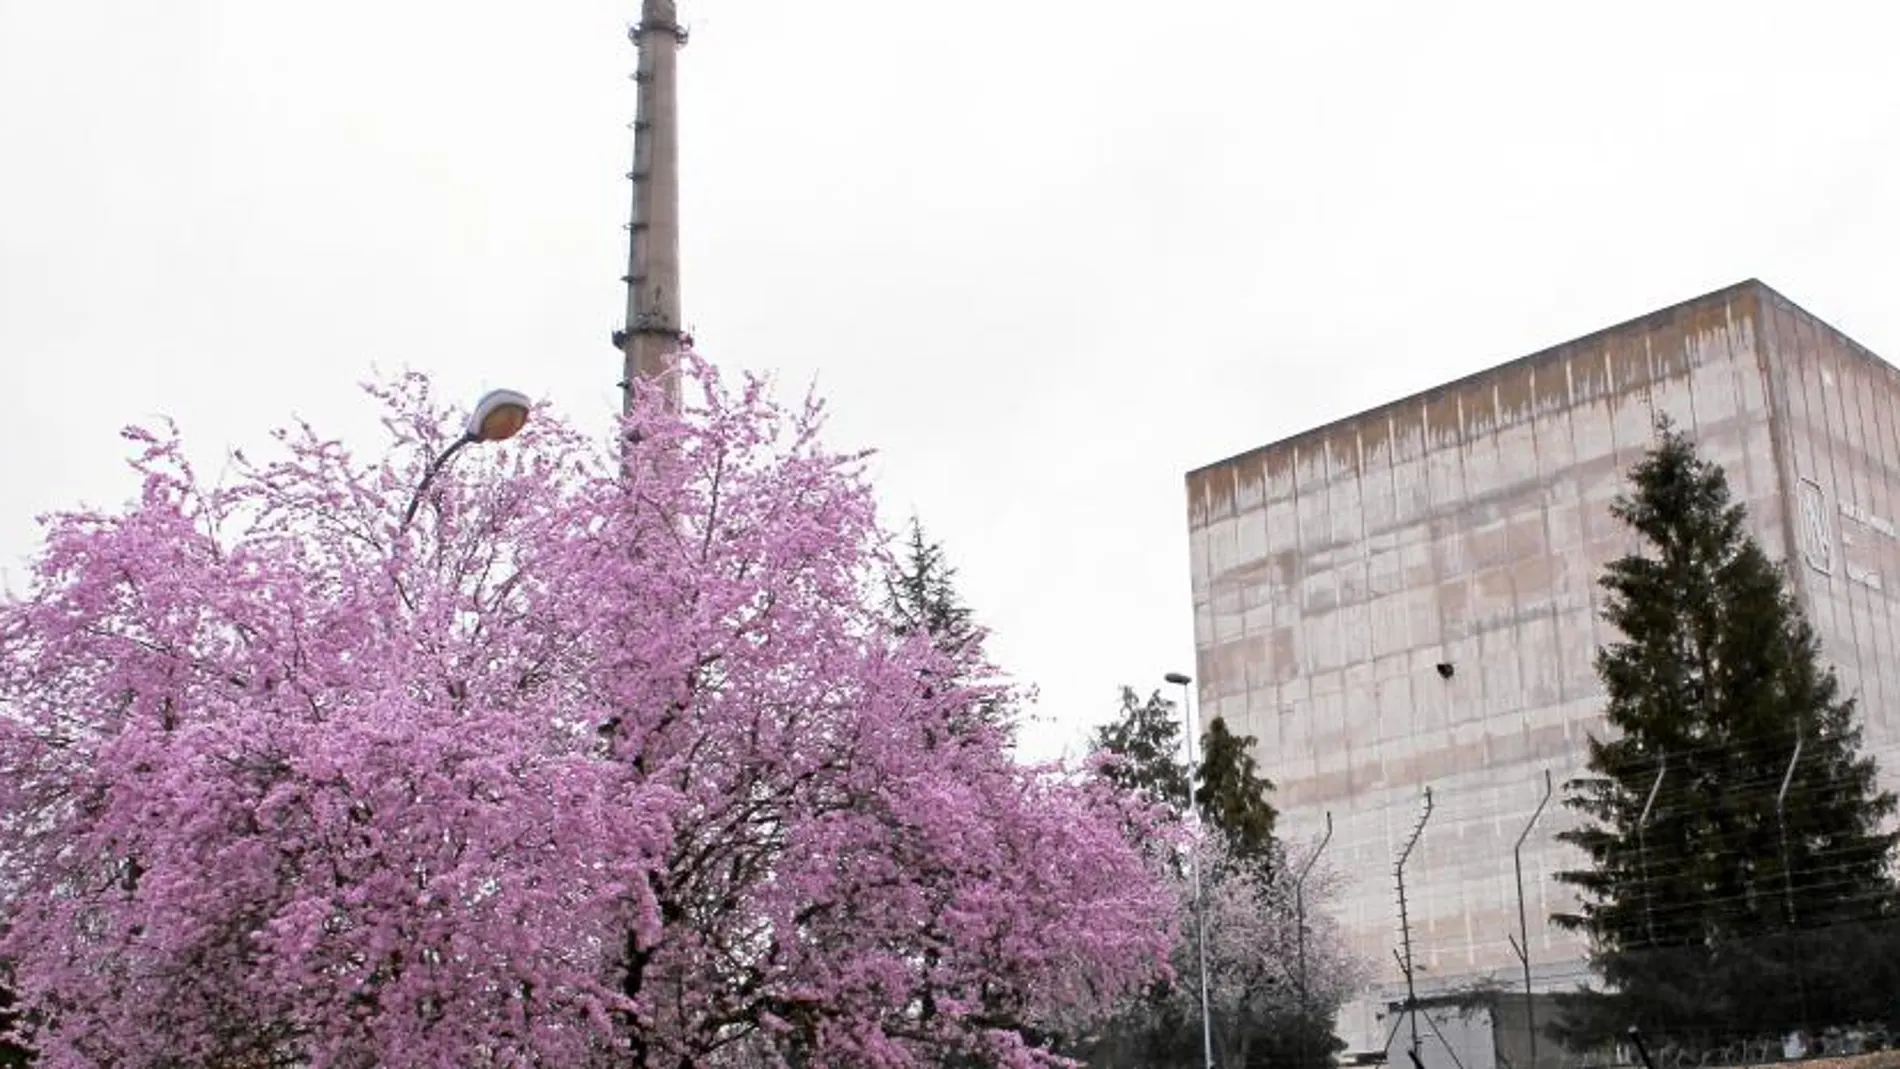 La central de Garoña, en el Valle de Tobalina, al norte de Burgos, es la más antigua y pequeña del parque nuclear